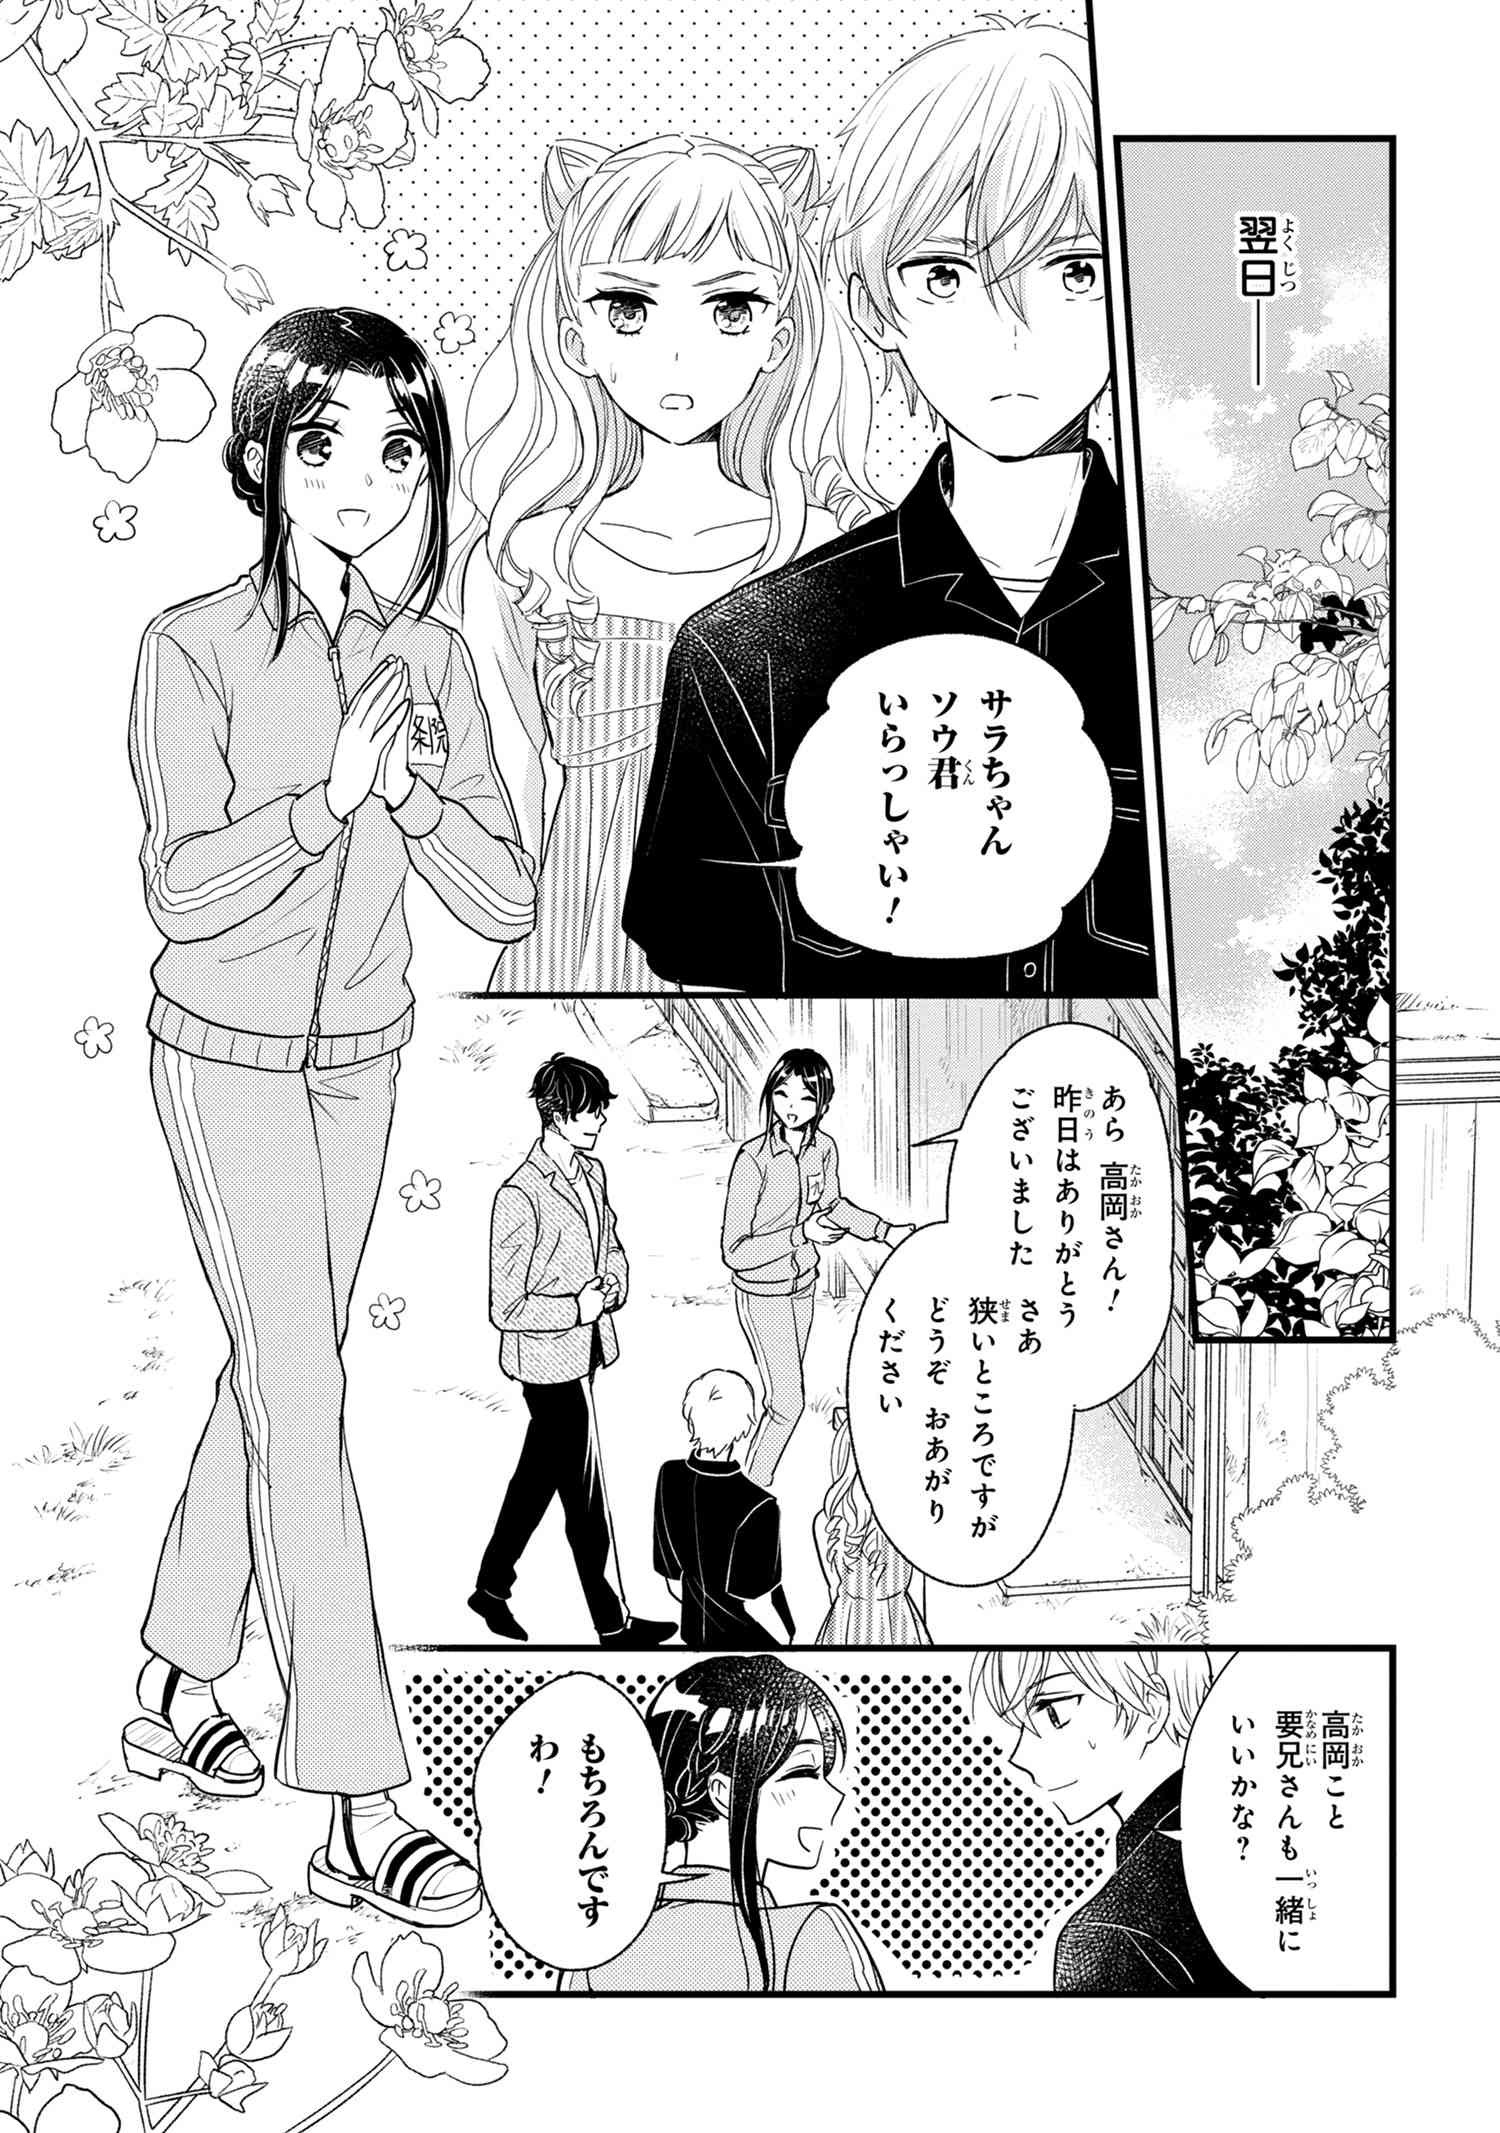 Reiko no Fuugi Akuyaku Reijou to Yobarete imasu ga, tada no Binbou Musume desu - Chapter 6-4 - Page 1